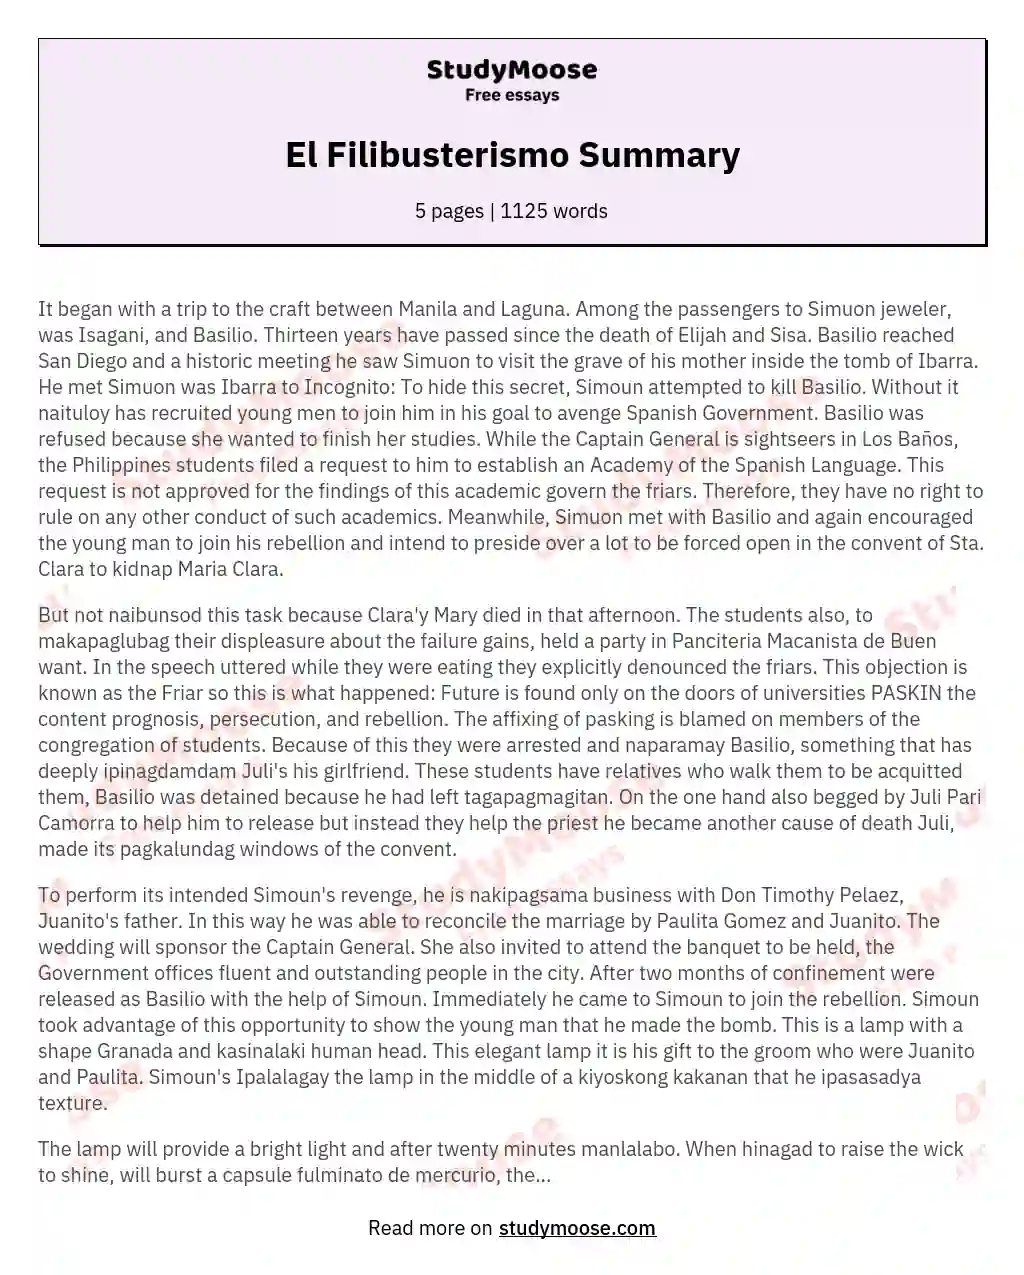 El Filibusterismo Summary essay